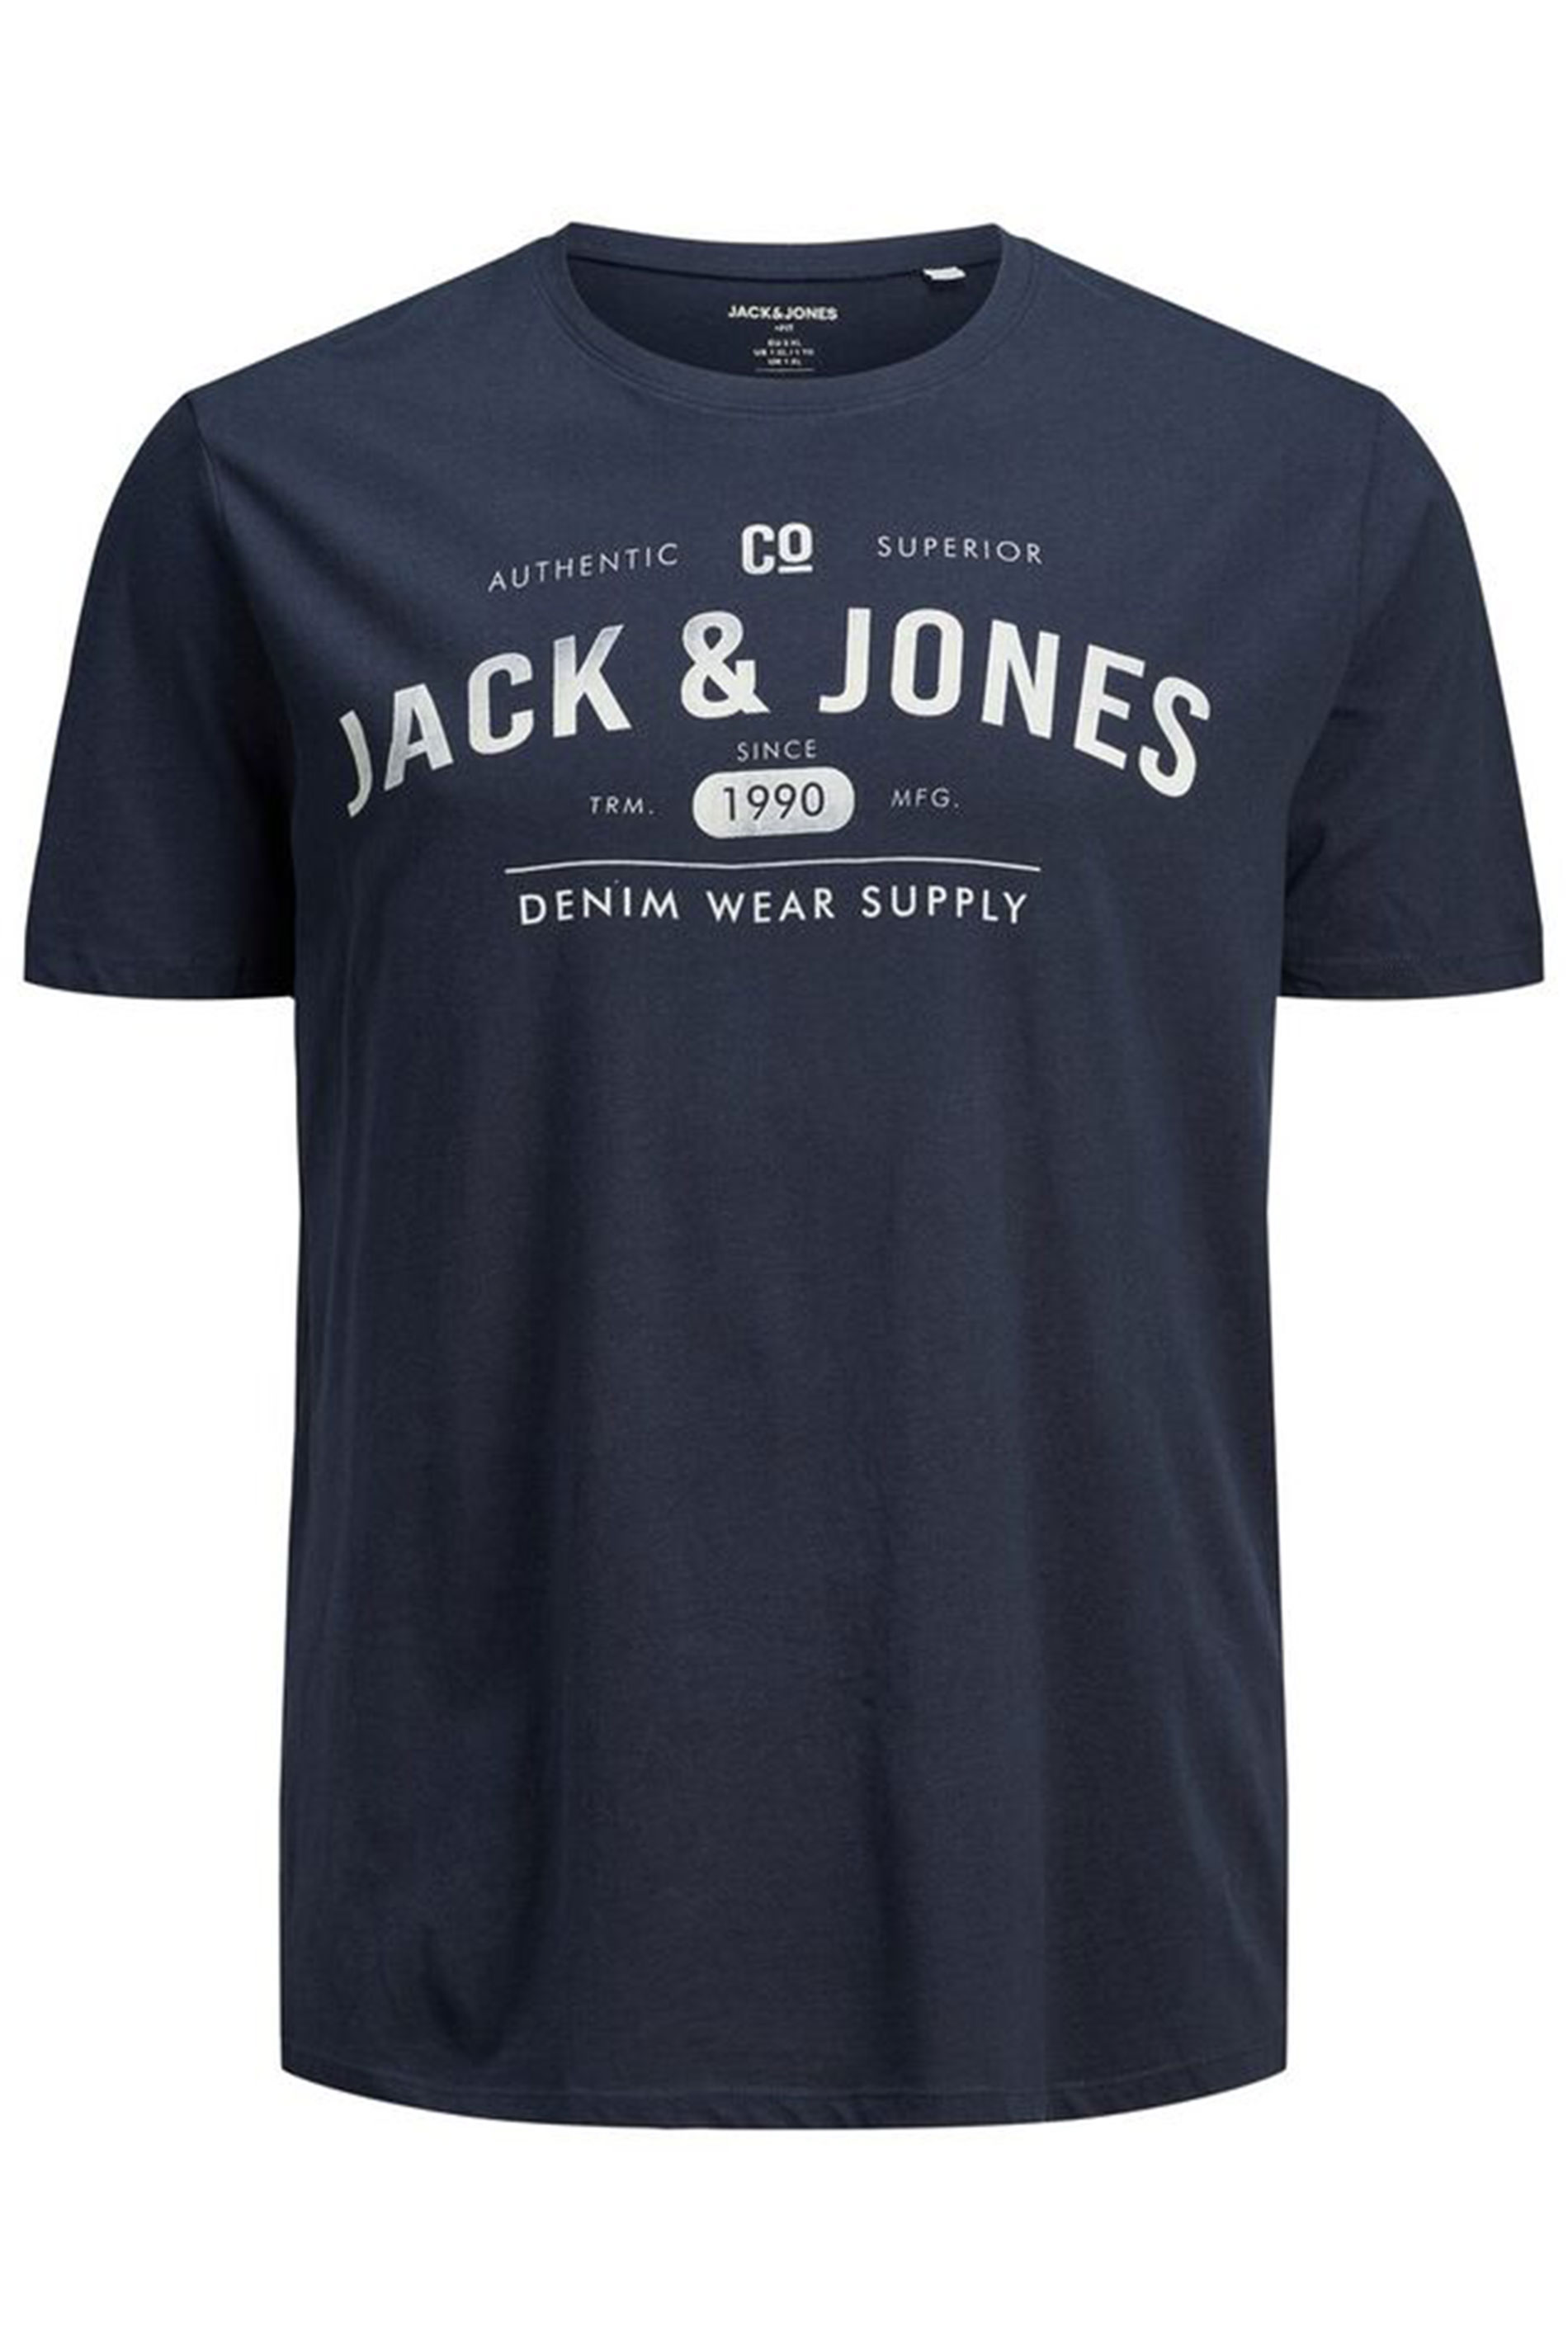 JACK & JONES Navy Logo Printed T-Shirt | BadRhino